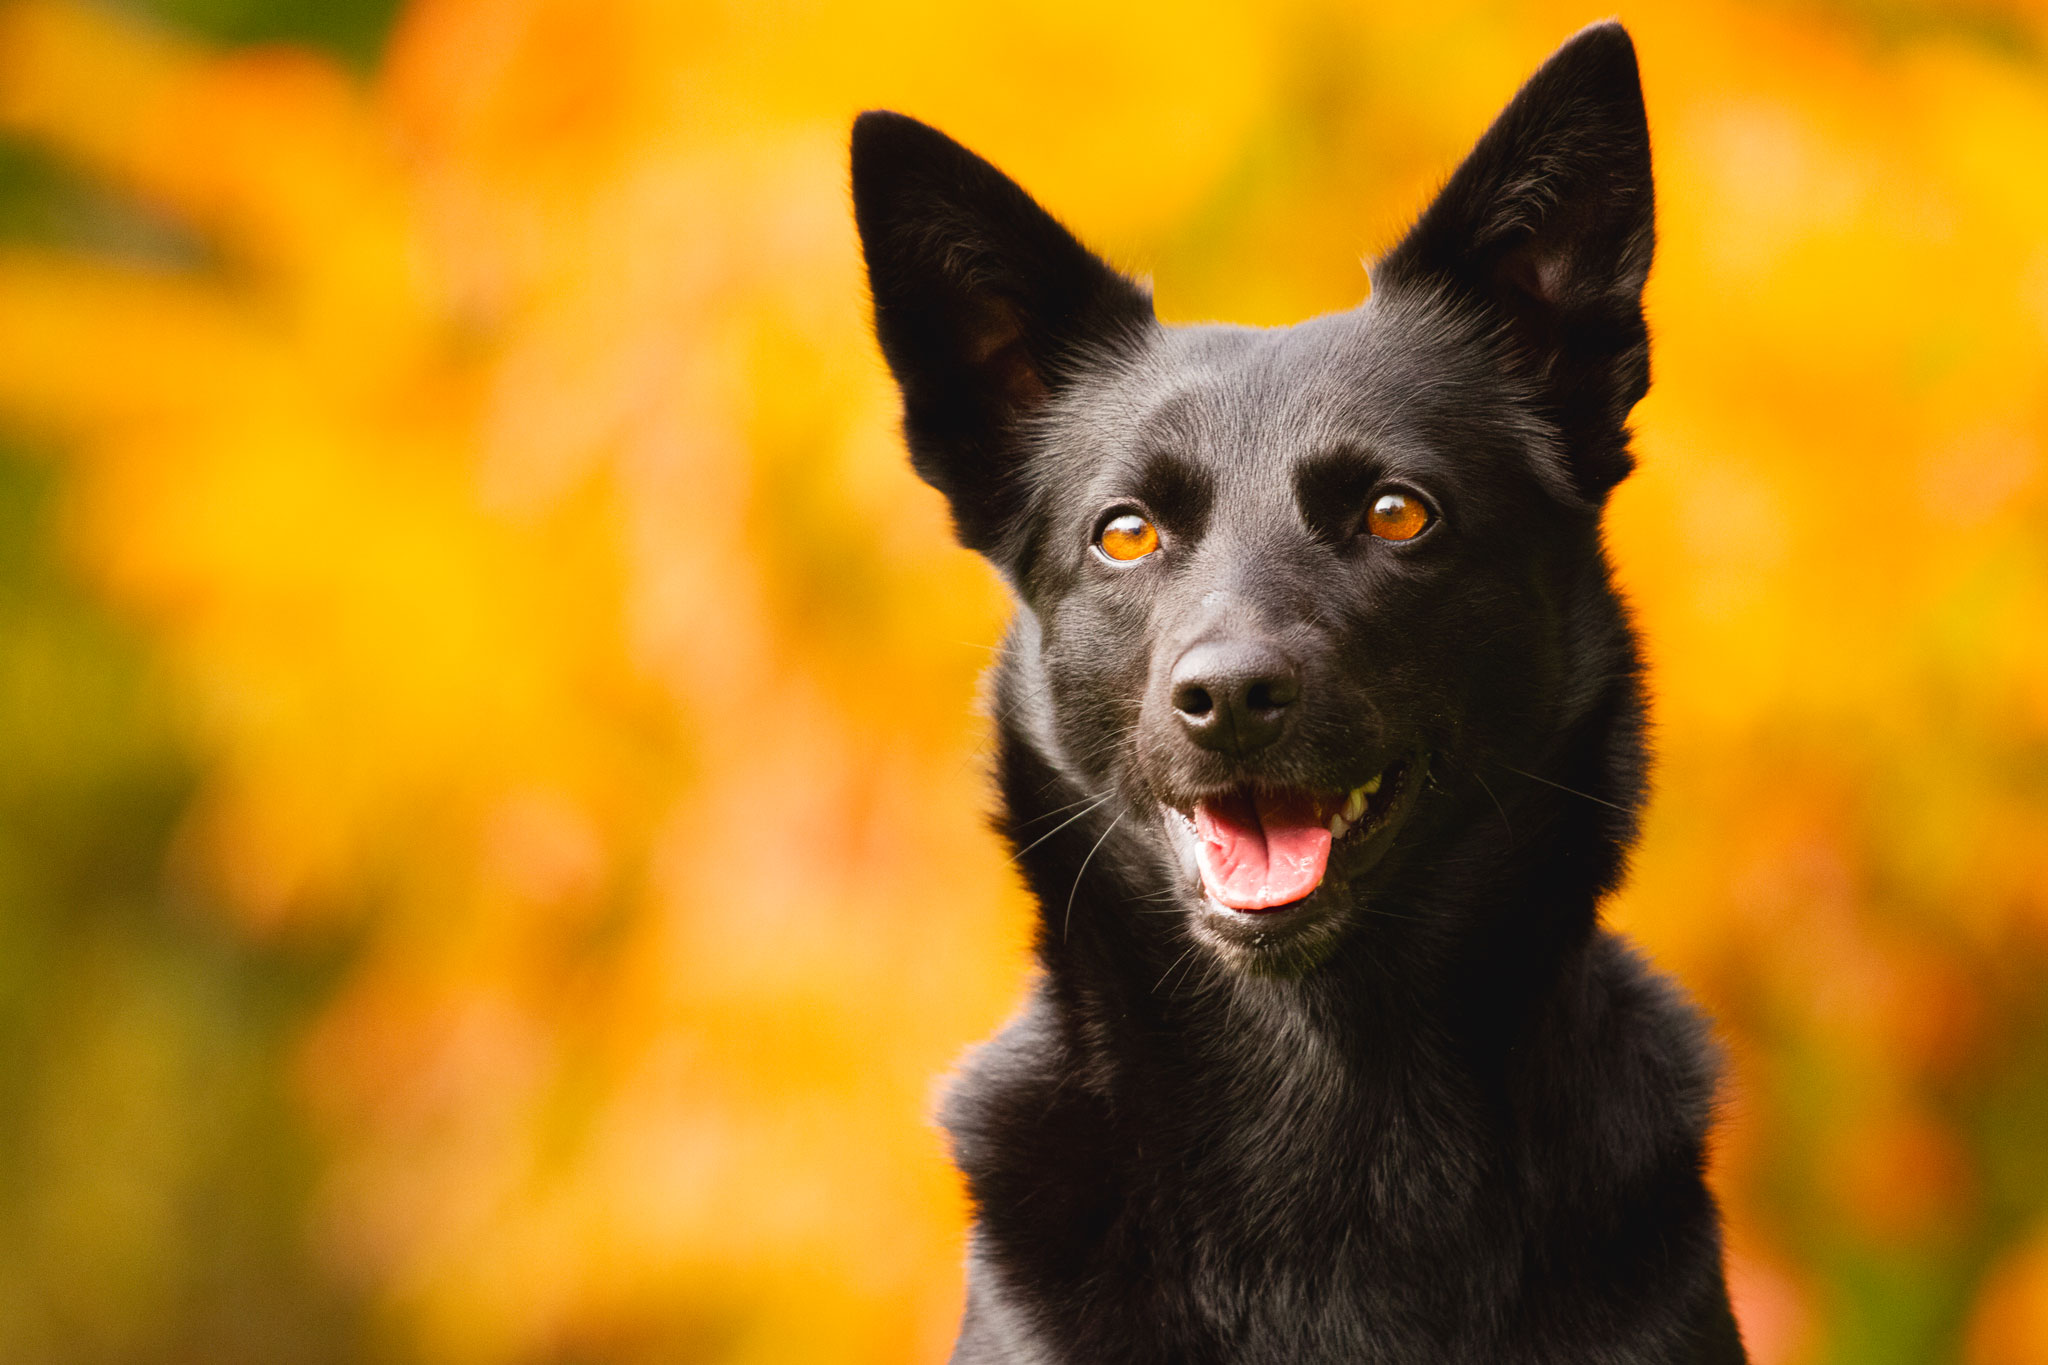 Kopfportrait eines Hundes vor herbstlich bunten Hintergrund.